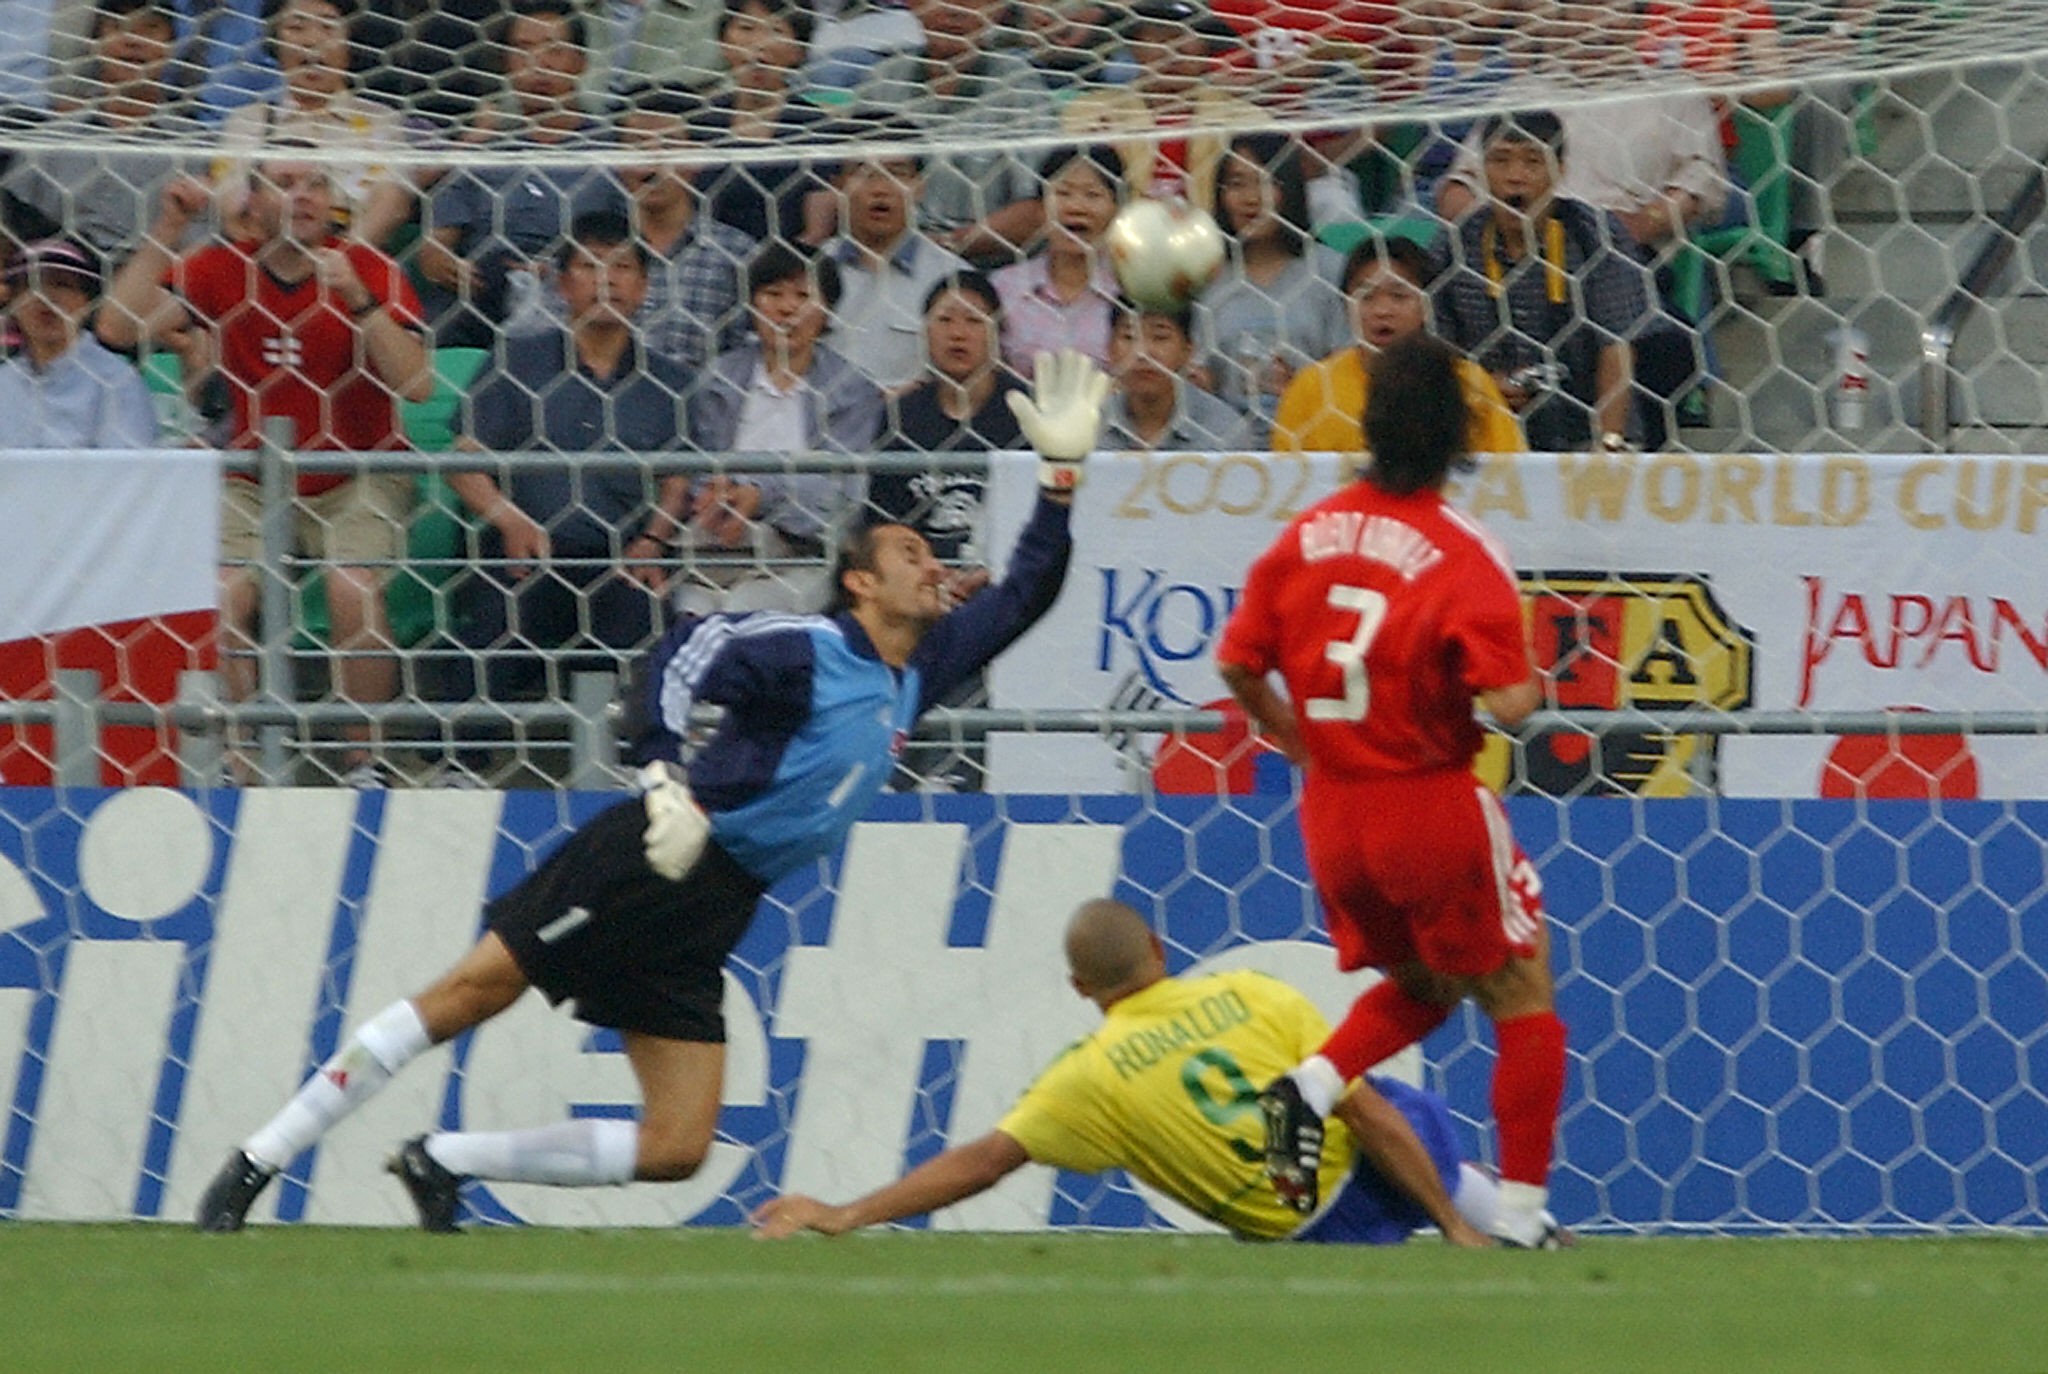 Em 2002, a Turquia passou por Japão e Senegal nas fases eliminatórias. Chegou até as semifinais, onde foi eliminada para o Brasil.